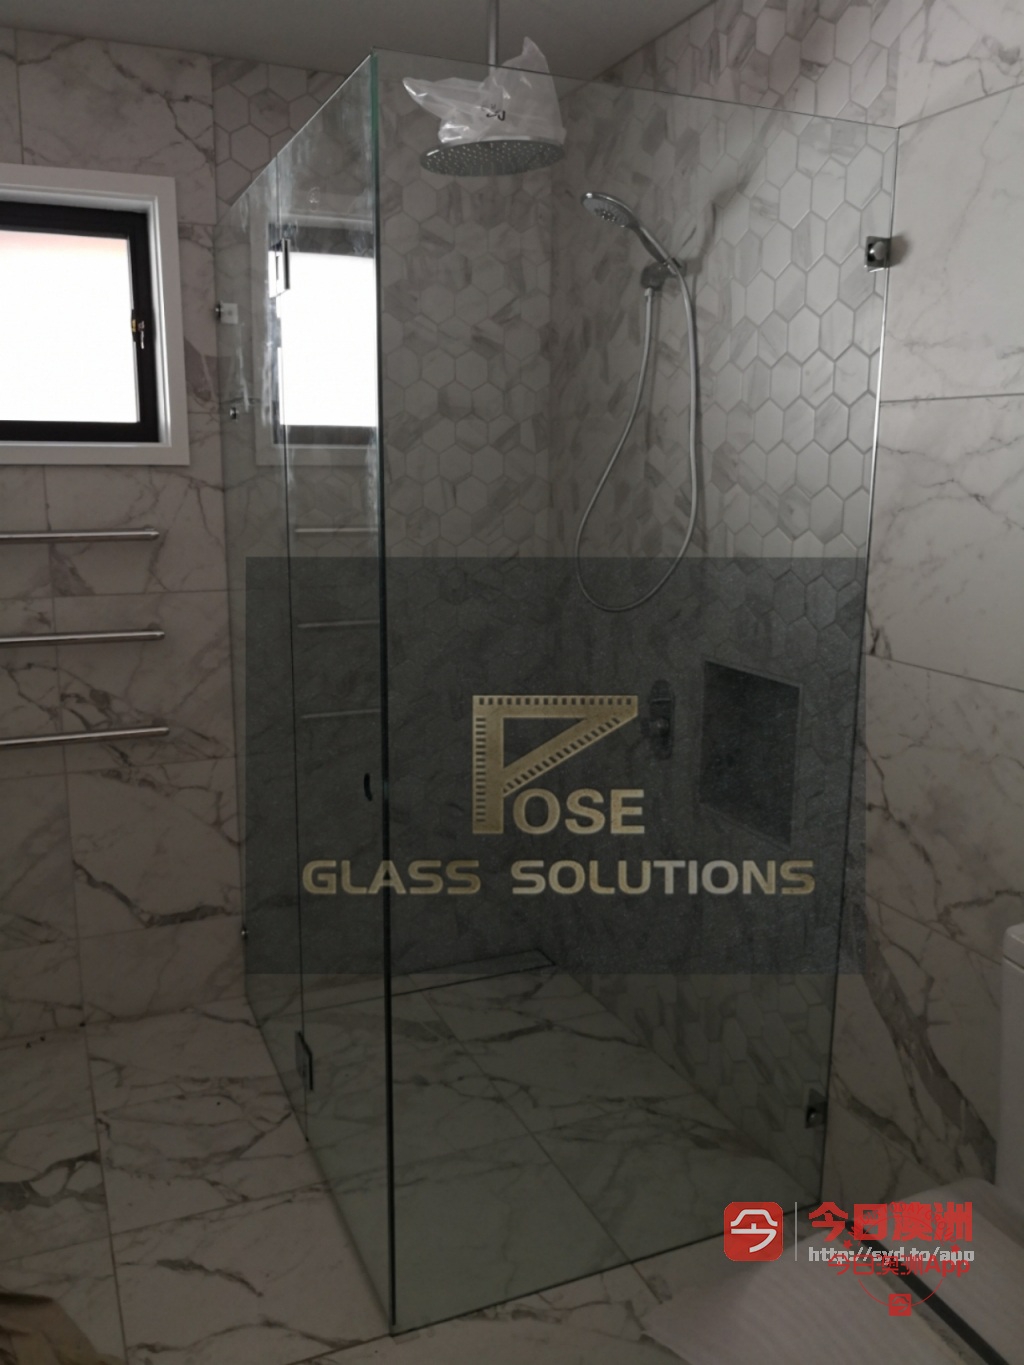  专业镜子玻璃安装淋浴房 泳池围栏 厨房玻璃 镜子安装及门窗玻璃维修